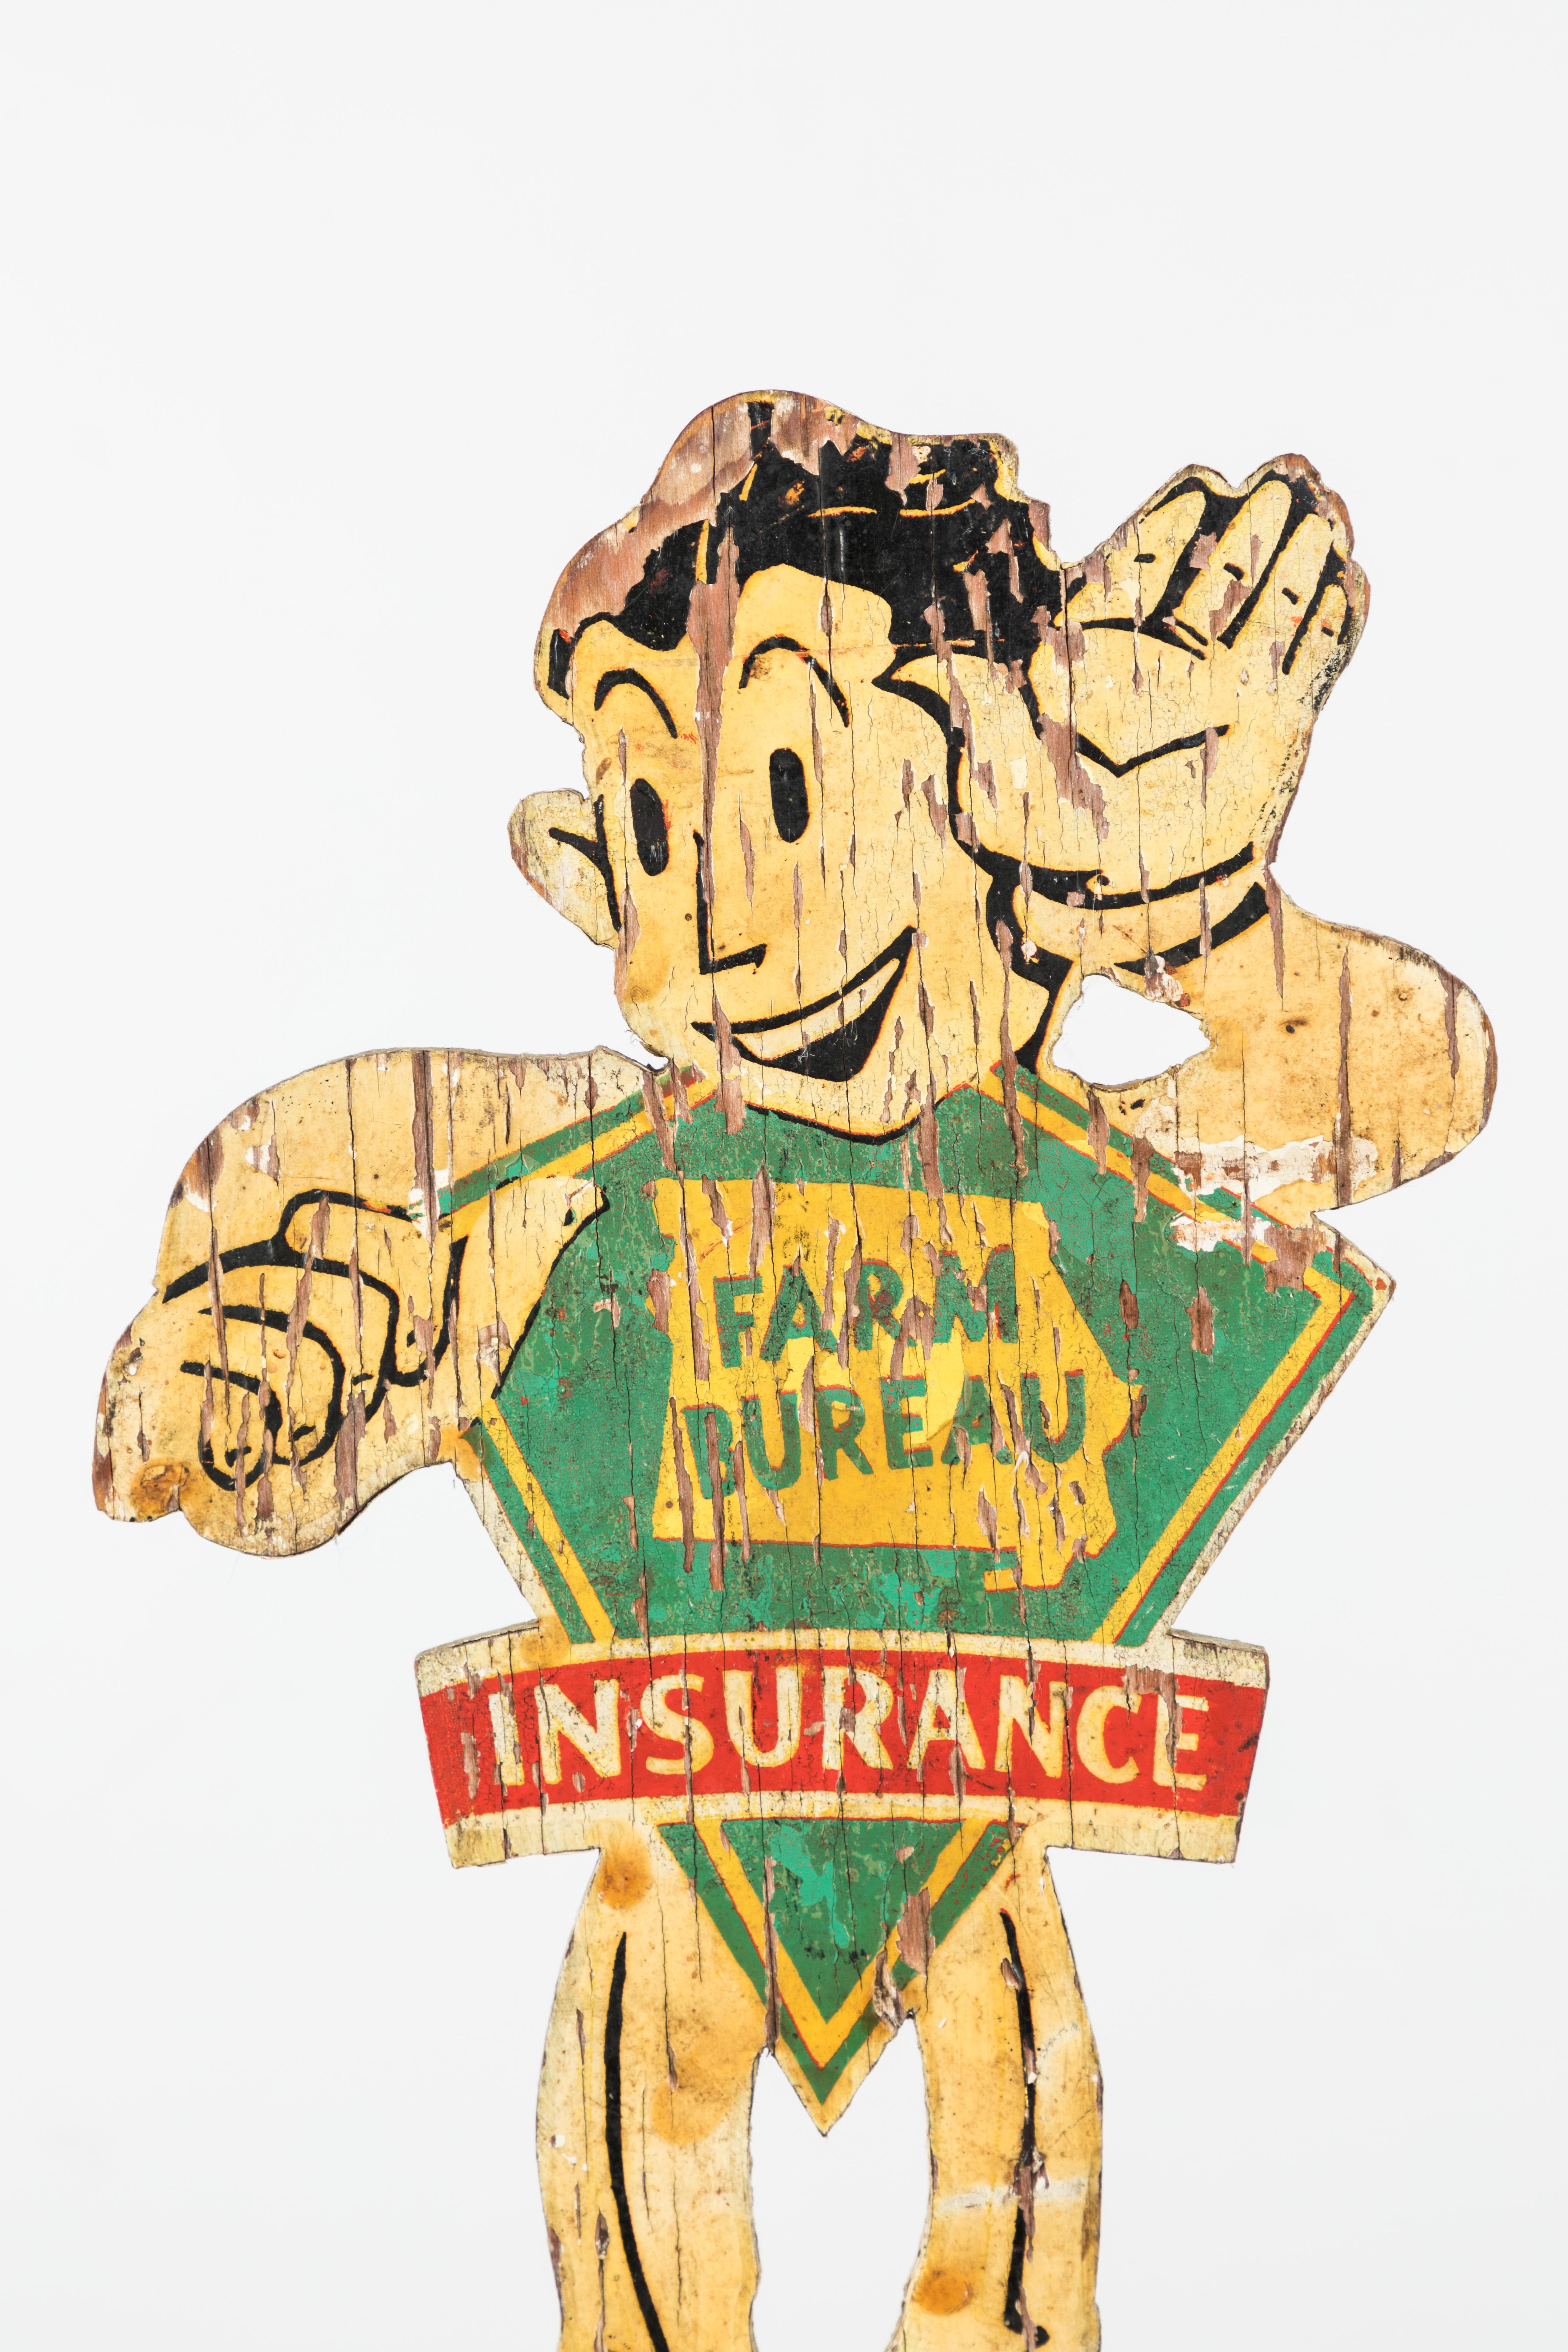 Großartig aussehende Cartoon Midwestern Americana Wetterfahne. Farm Bureau Insurance wurde 1921 gegründet. Dieses tolle Stück war höchstwahrscheinlich ein Prämien- oder Werbestück. Handbemaltes Holz mit Eisenpfeil. Präsentiert auf einem speziell